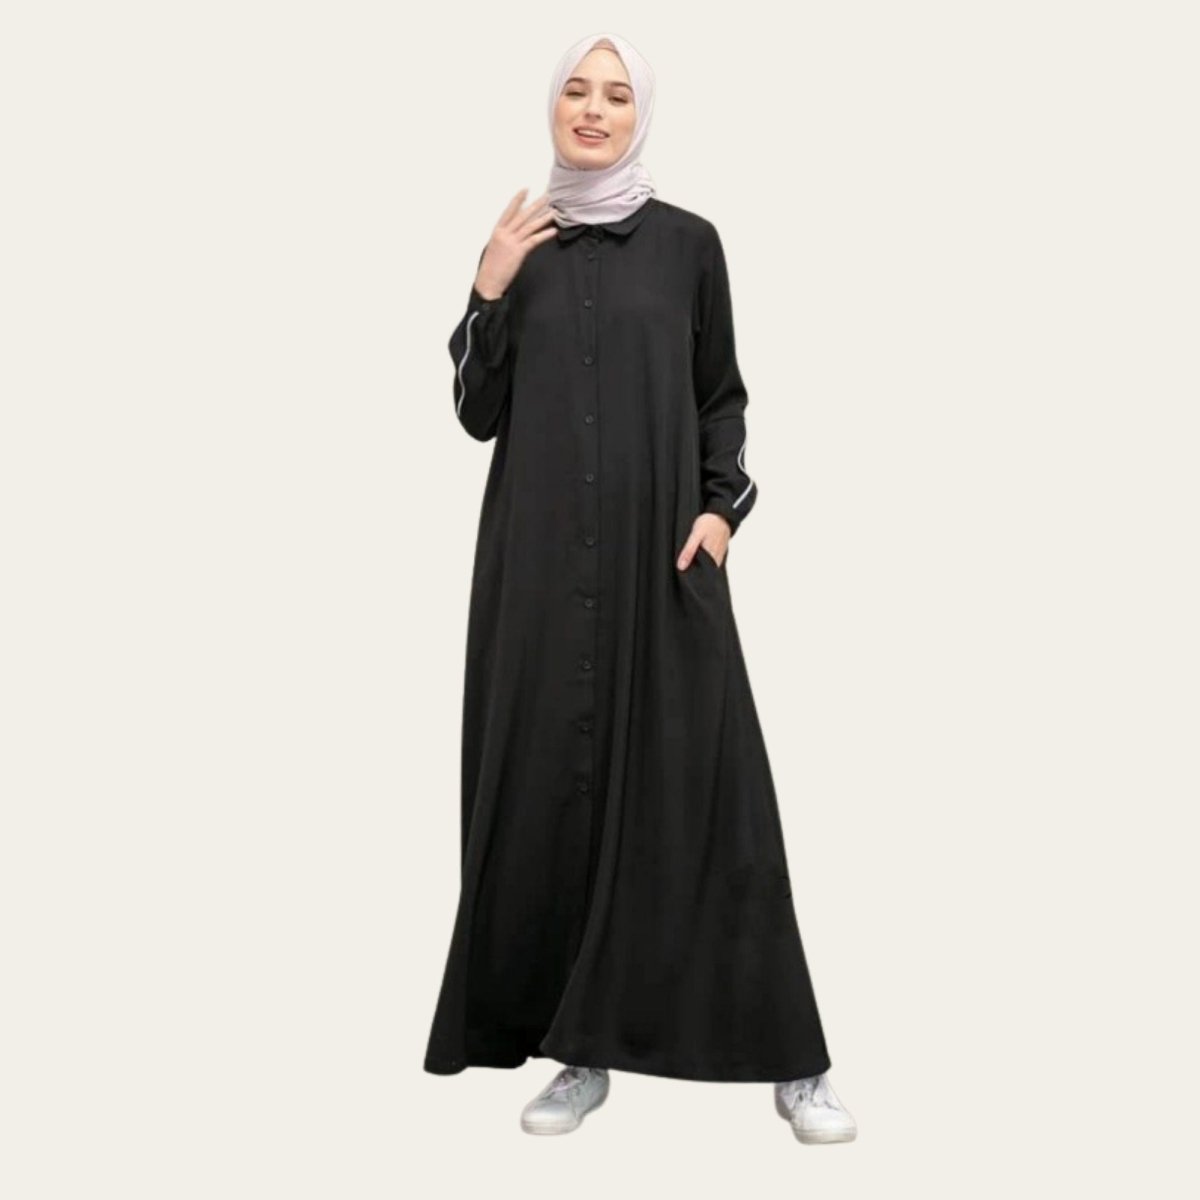 Black Turkish Abaya for Hajj and Umrah with Pocket